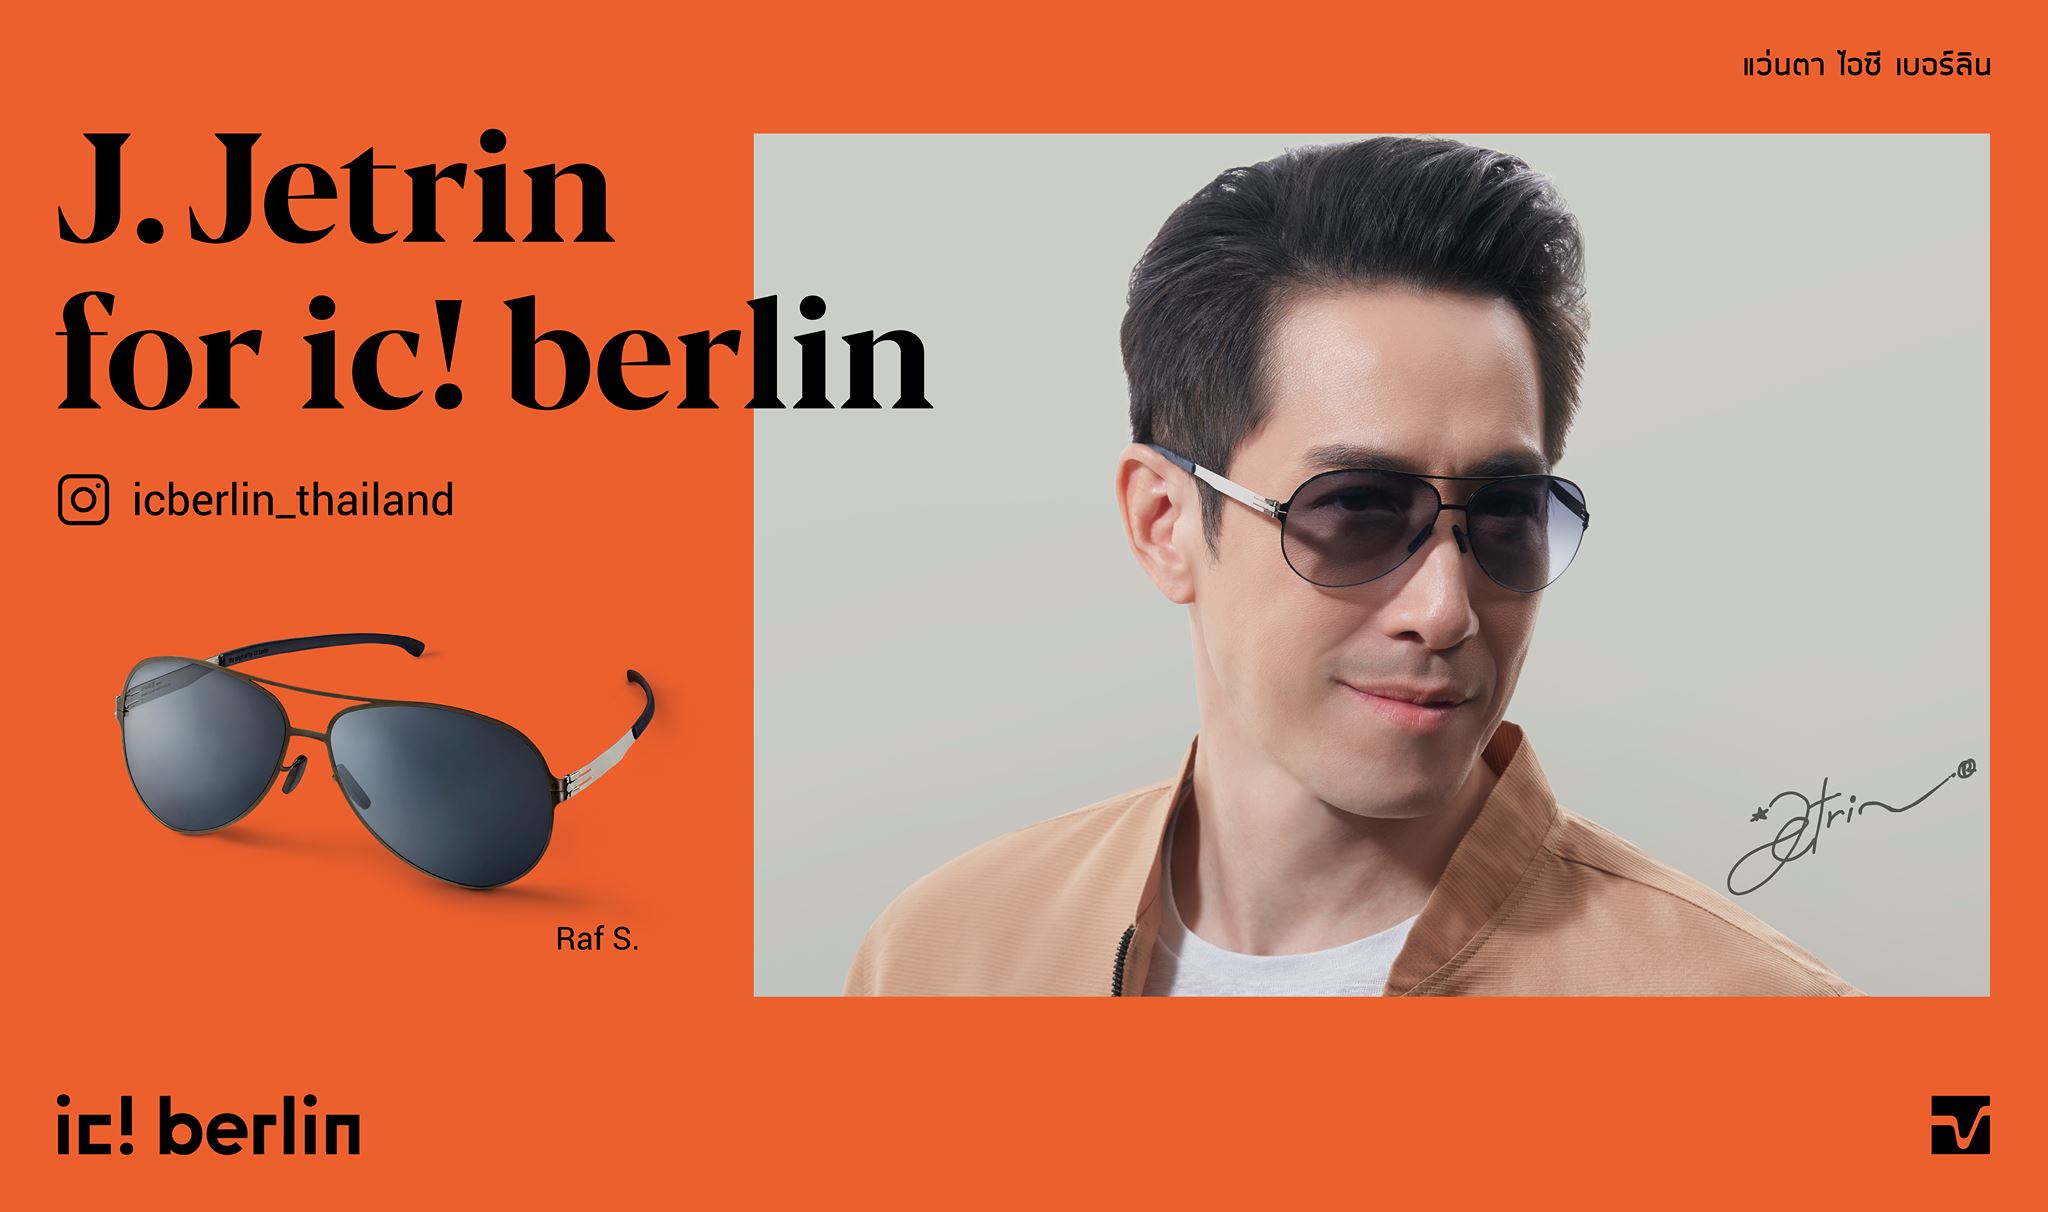 อายลิ้งค์ วิชั่น เตรียมเปิดตัว ic! berlin (ไอซี เบอร์ลิน) แบรนด์แว่นตาหรูจากเยอรมนี